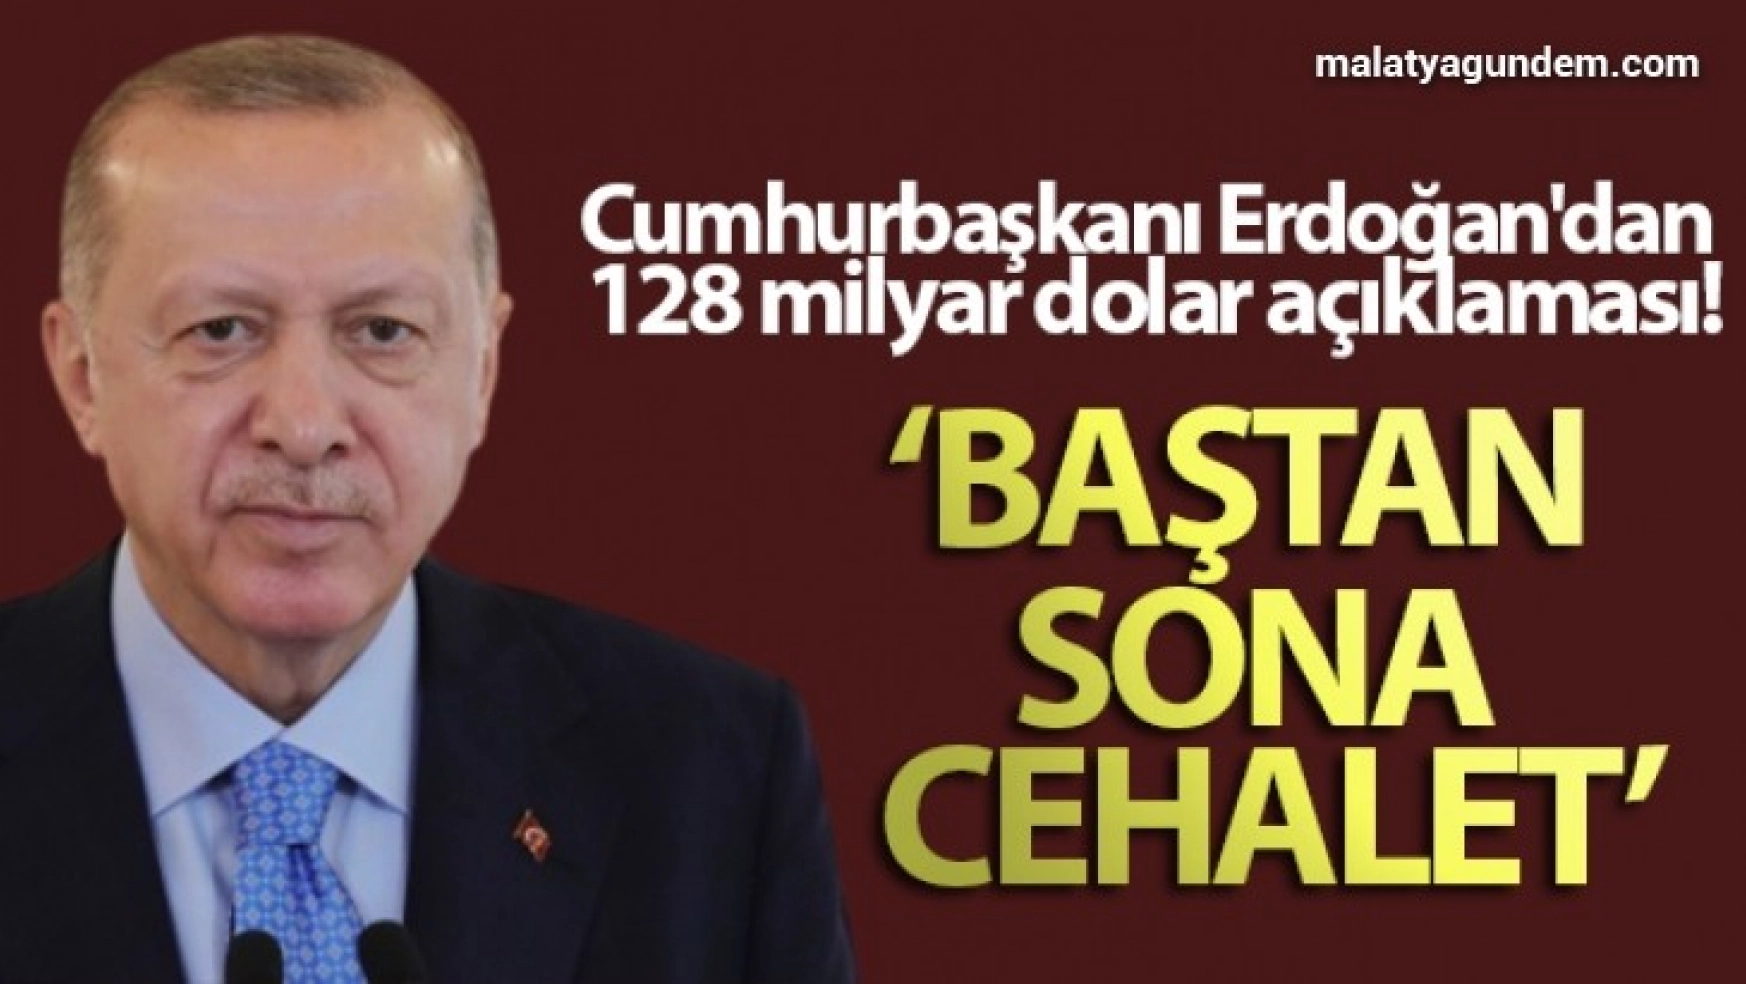 Cumhurbaşkanı Erdoğan'dan 128 milyar dolar açıklaması: Baştan sona cehalet